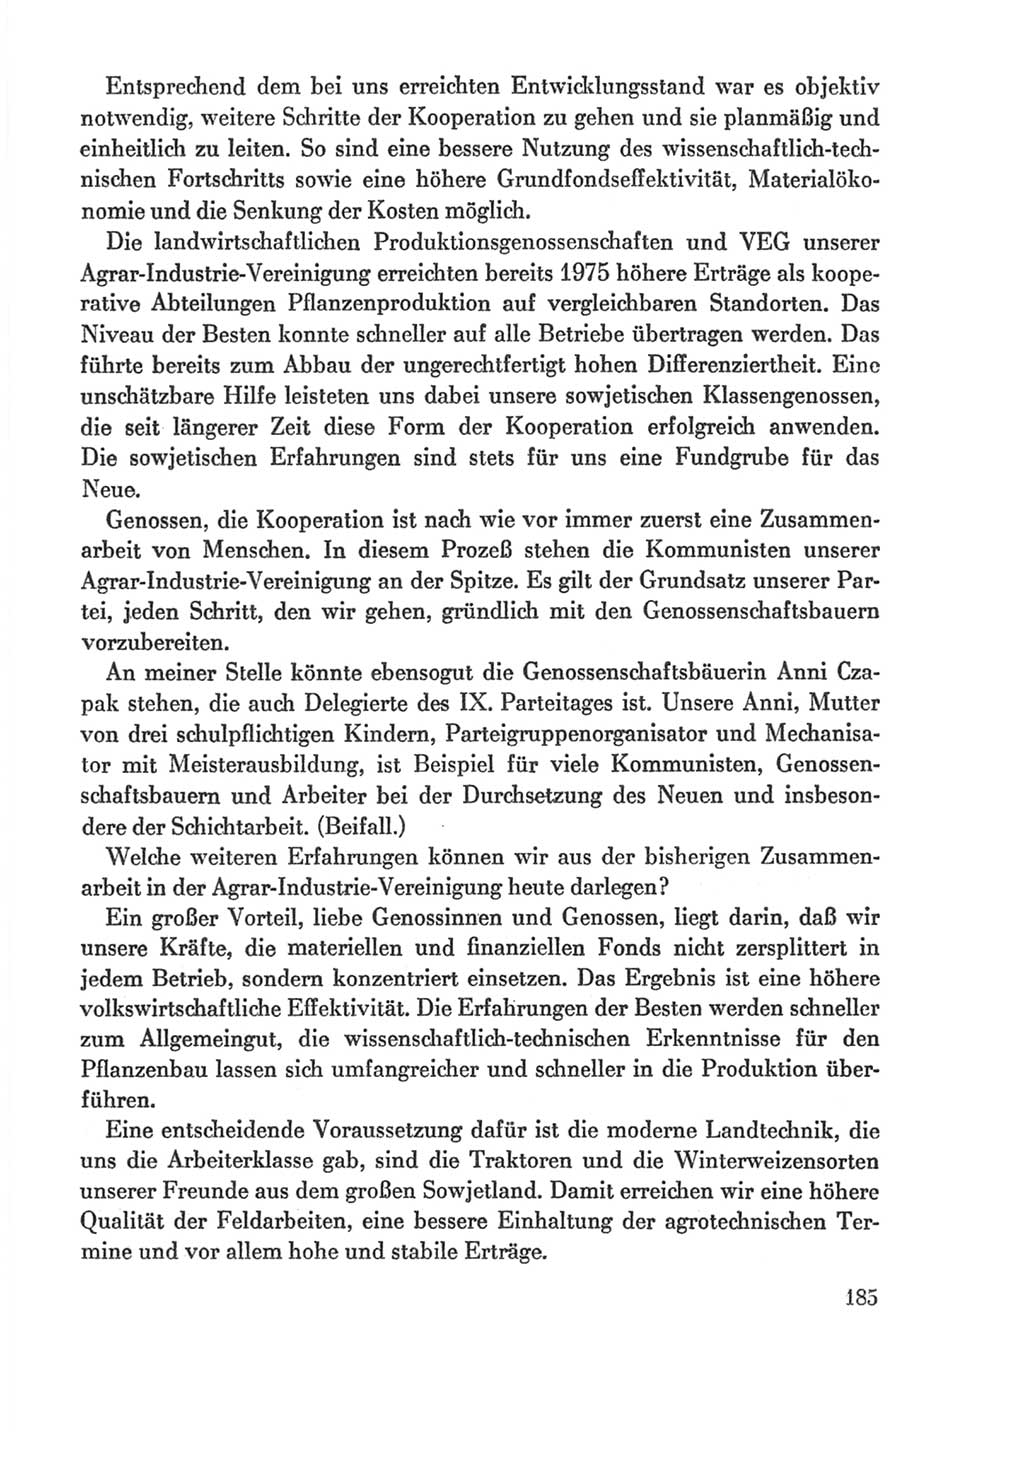 Protokoll der Verhandlungen des Ⅸ. Parteitages der Sozialistischen Einheitspartei Deutschlands (SED) [Deutsche Demokratische Republik (DDR)] 1976, Band 1, Seite 185 (Prot. Verh. Ⅸ. PT SED DDR 1976, Bd. 1, S. 185)